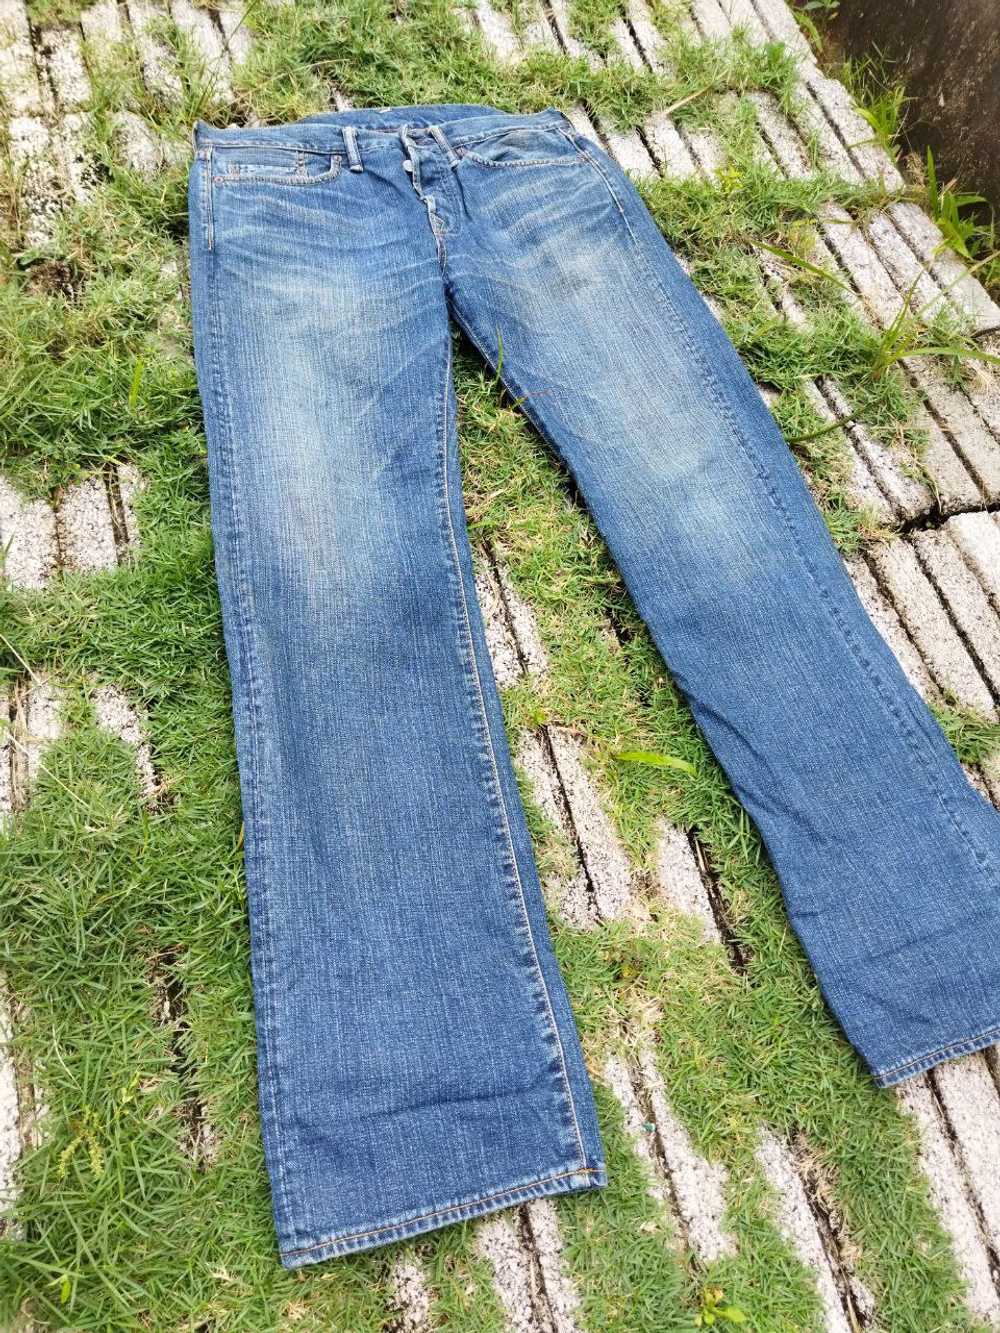 45rpm - Vintage 45rpm Japan Jeans - image 1